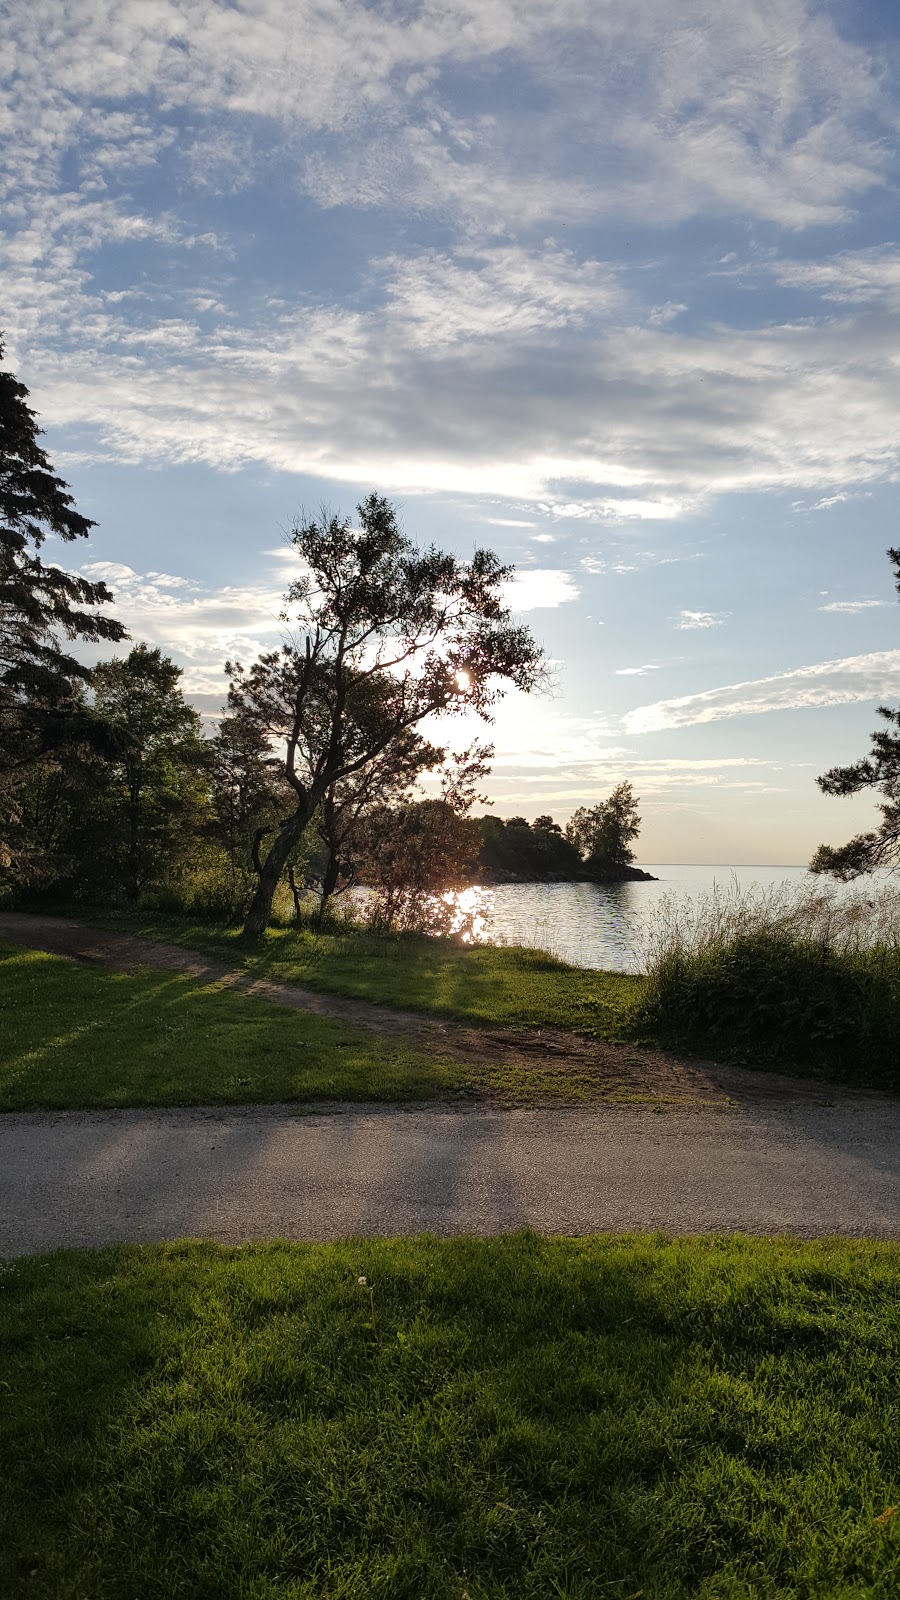 Ashbridges Bay Park | 1561 Lake Shore Blvd E, Toronto, ON M4L 3W6, Canada | Phone: (416) 392-2489